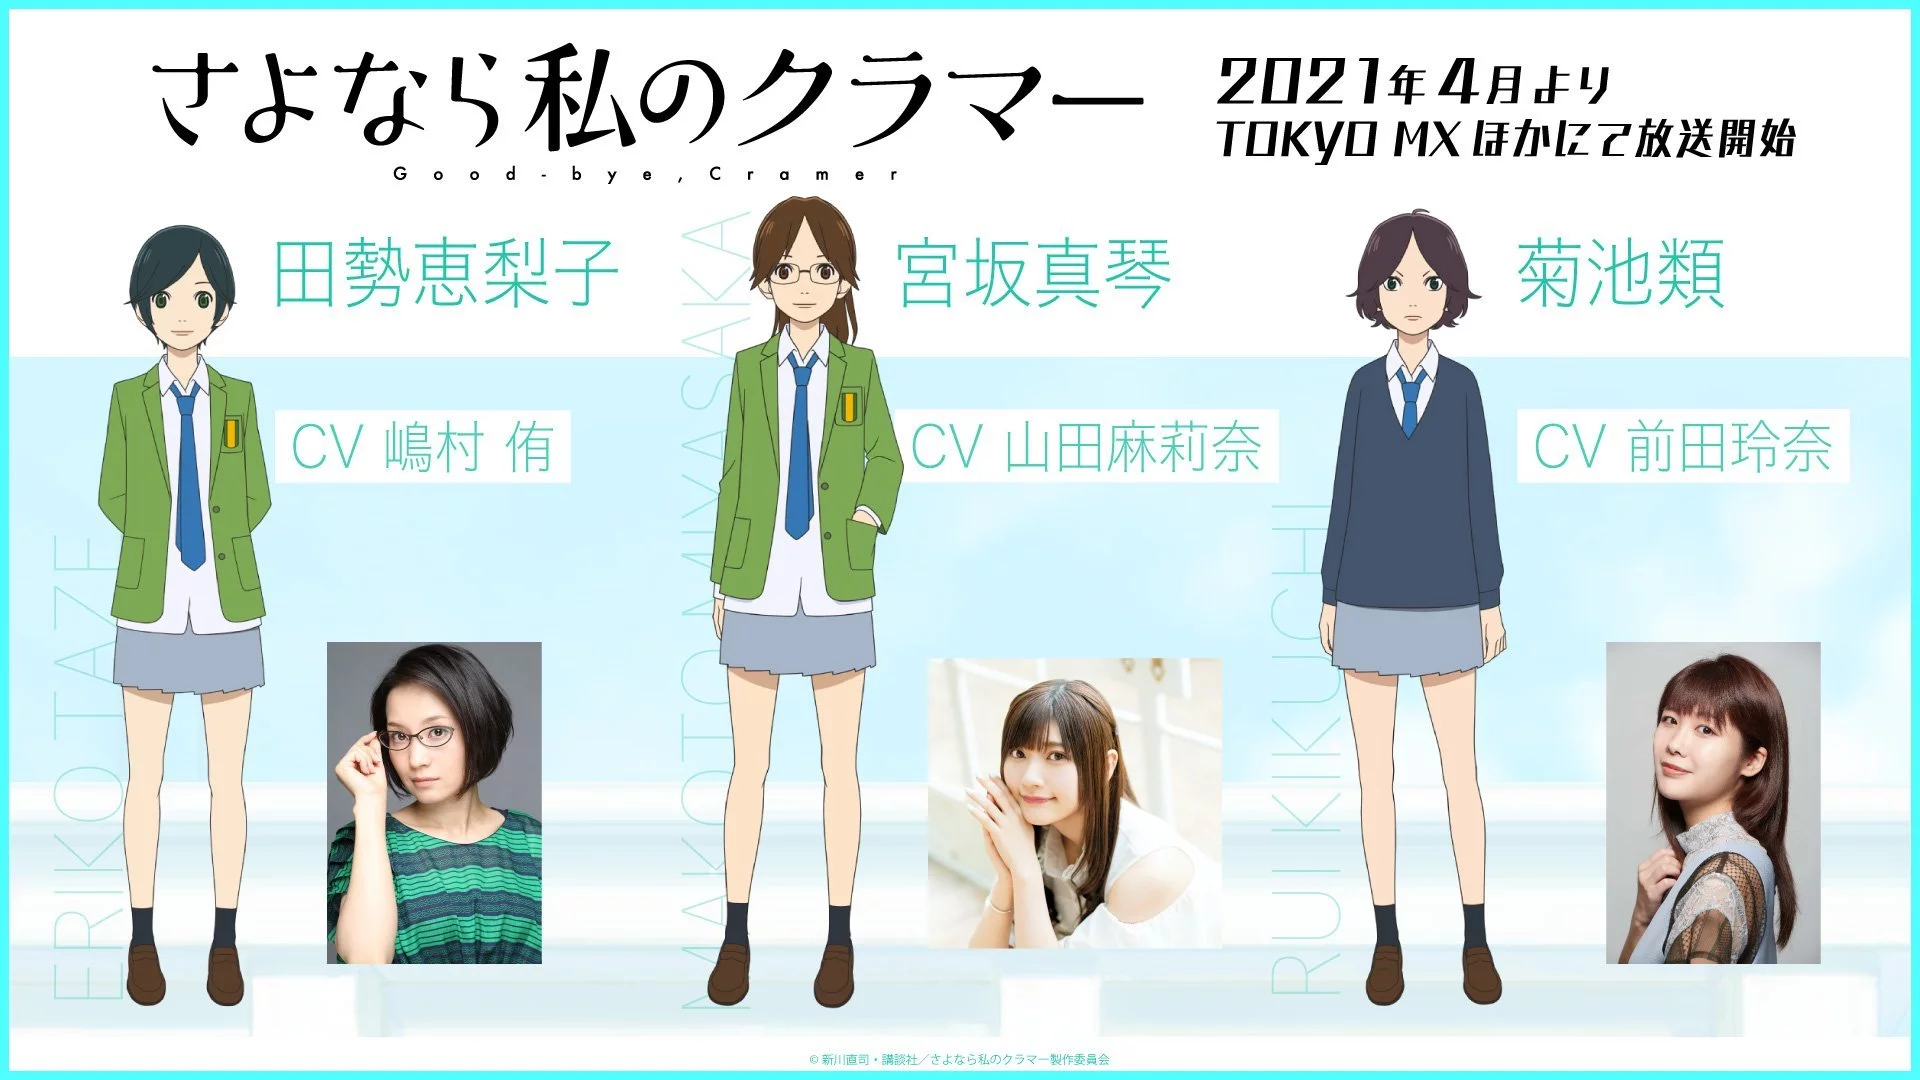 Yu Shimamura als Eriko Tase , Marina Yamada als Makoto Miyasaka, Rena Maeda als Rui Kikuchi